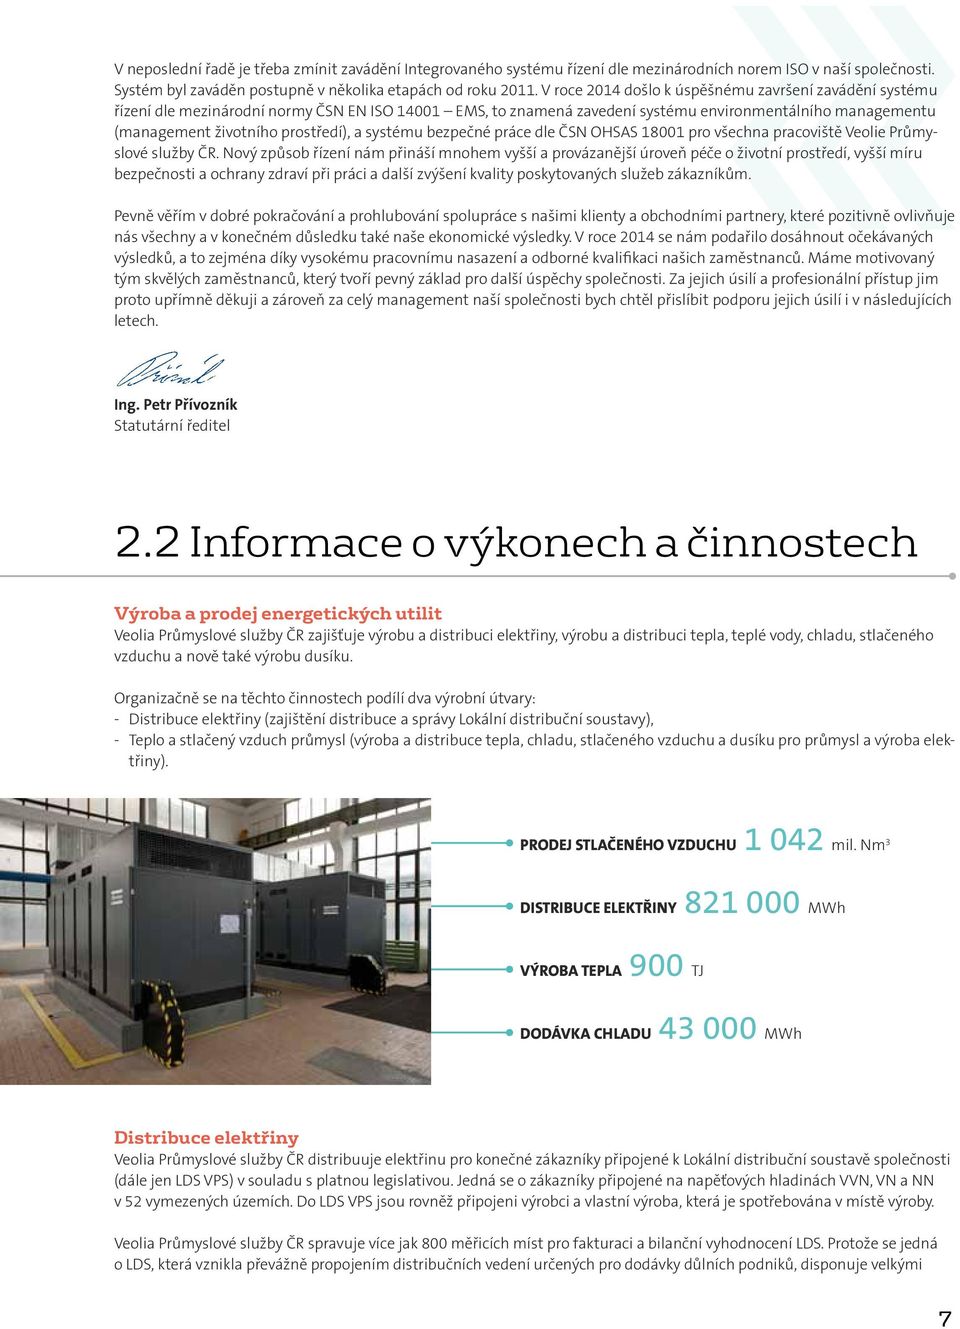 a systému bezpečné práce dle ČSN OHSAS 18001 pro všechna pracoviště Veolie Průmyslové služby ČR.